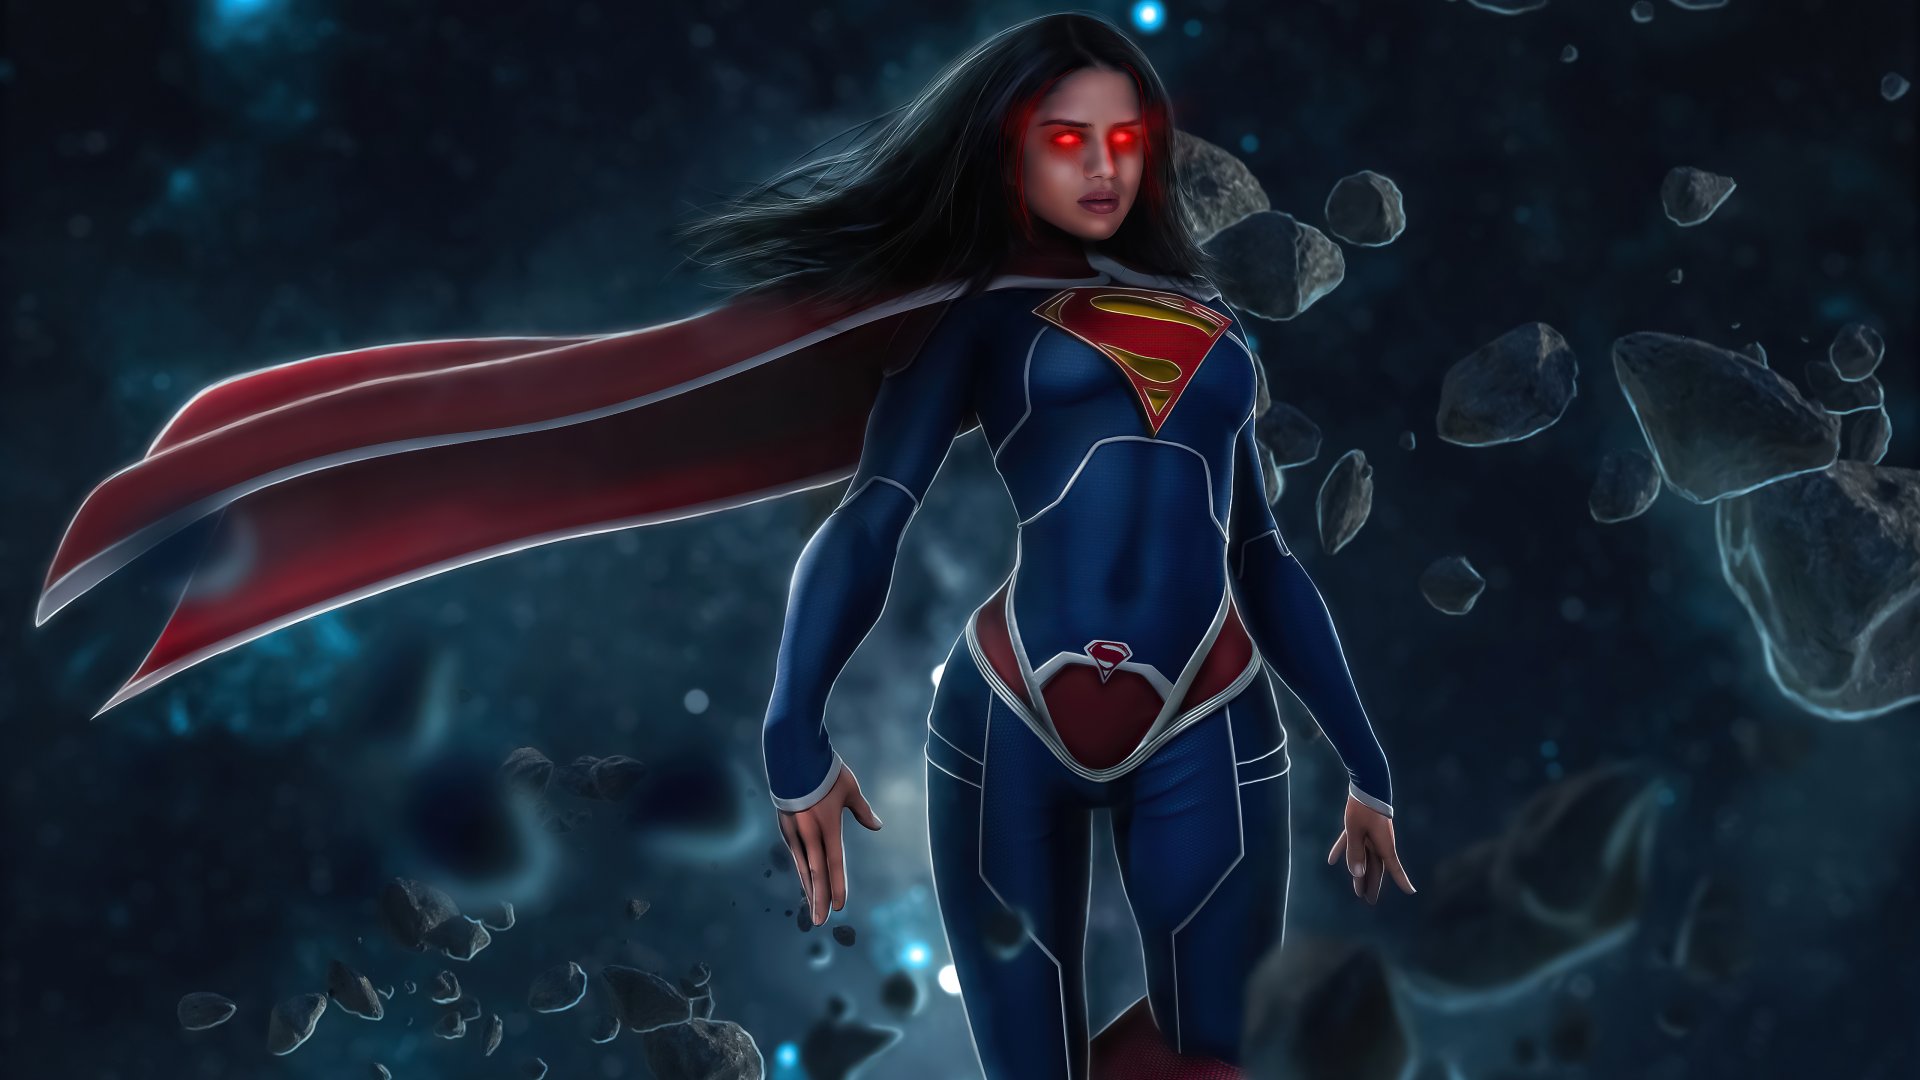 Sasha Calle Glowing Eyes as Supergirl Wallpaper 5k Ultra HD